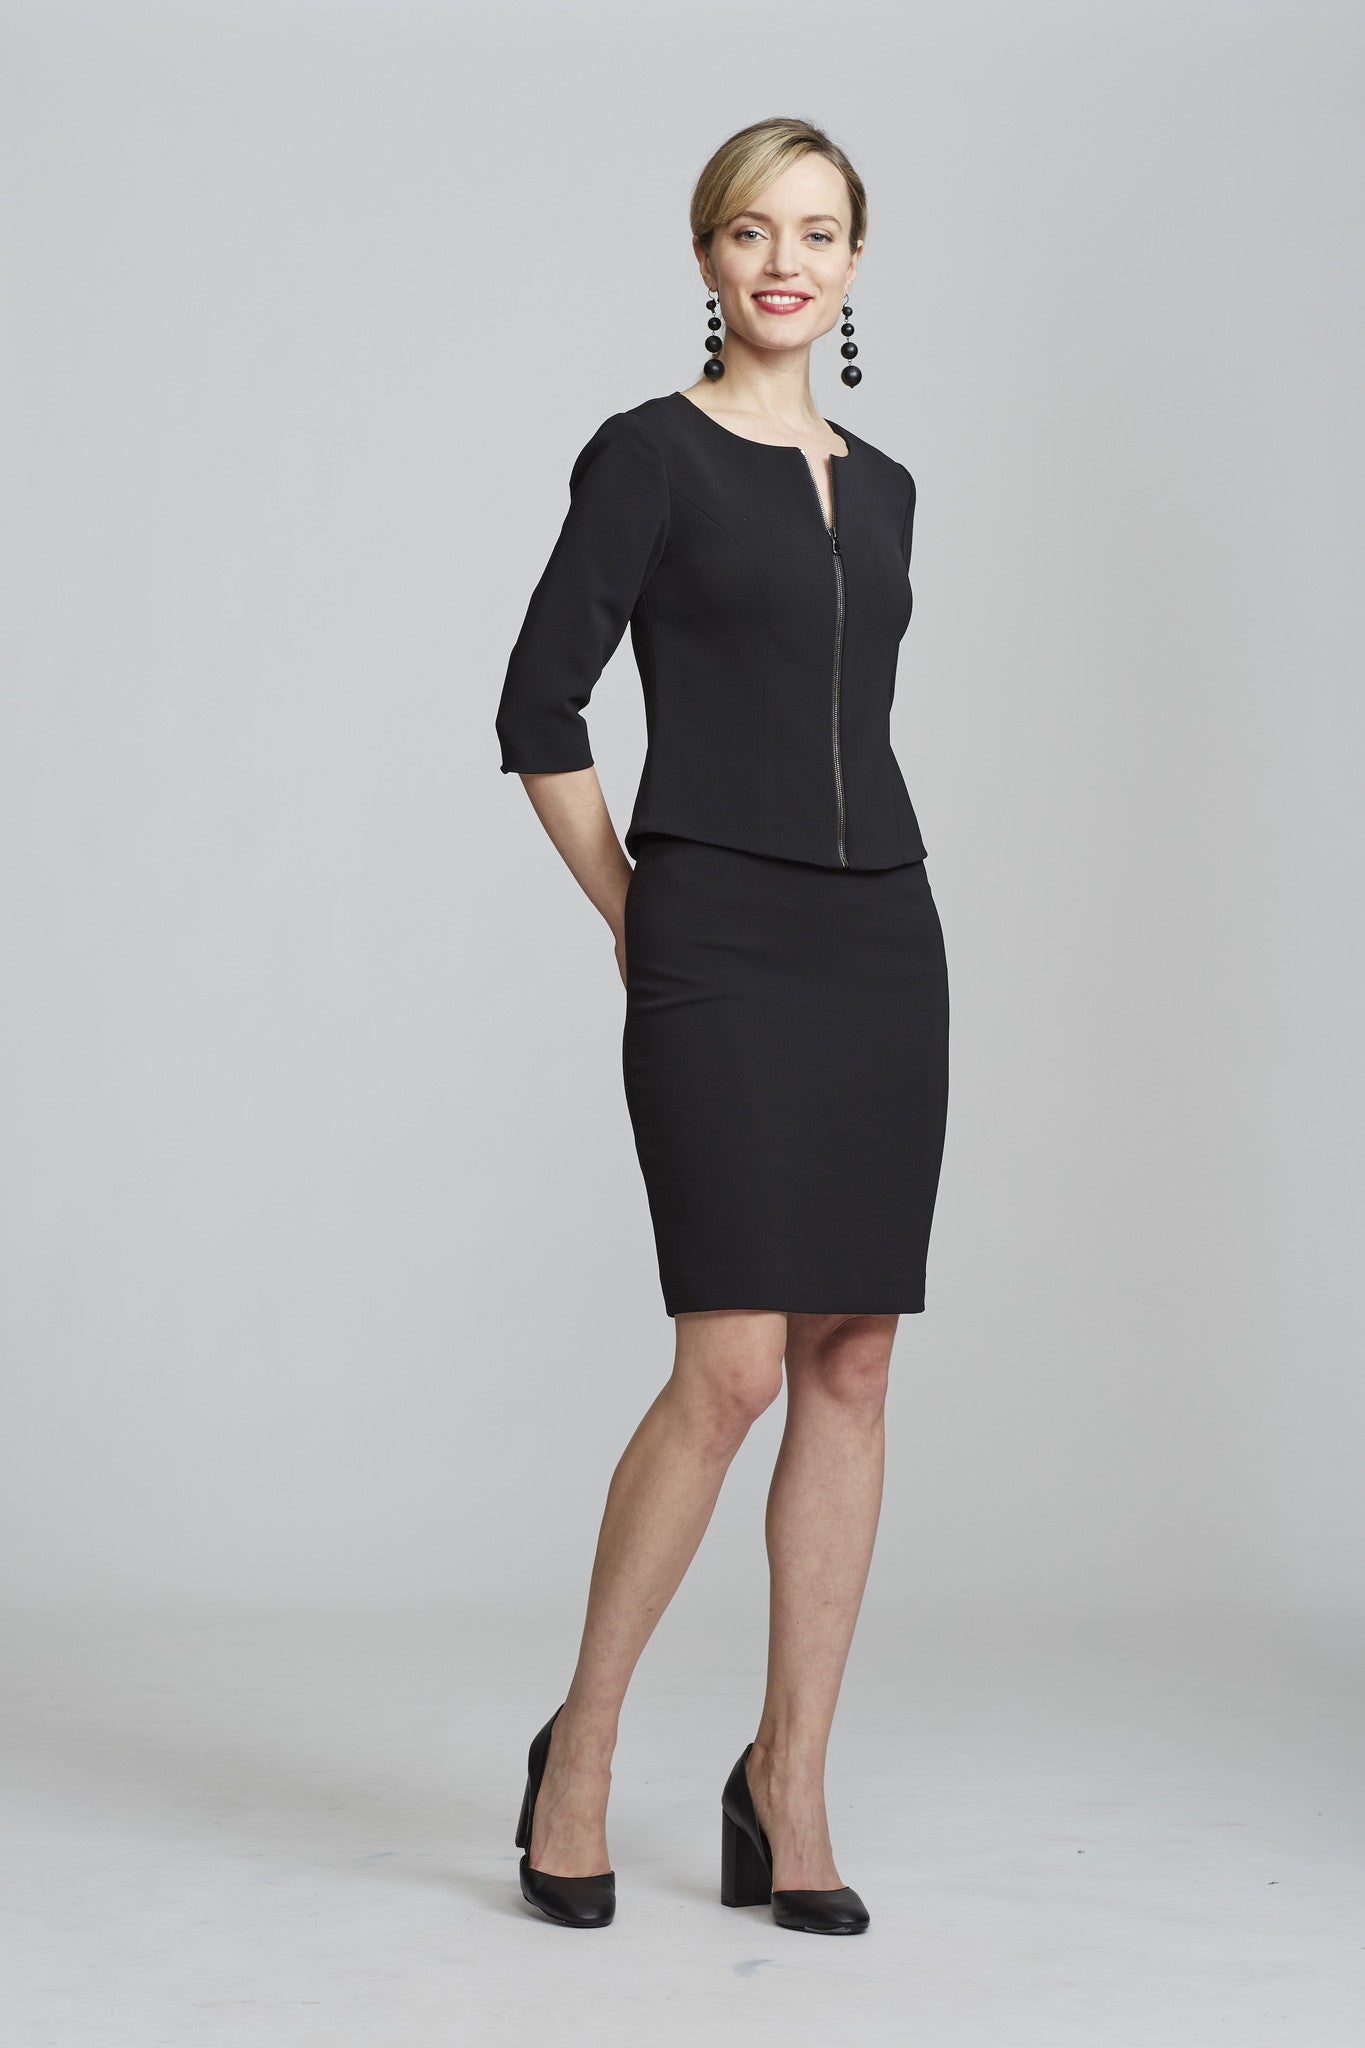 Women' Business Chelsea Skirt - Black NORA GARDNER | OFFICIAL STORE for work and office